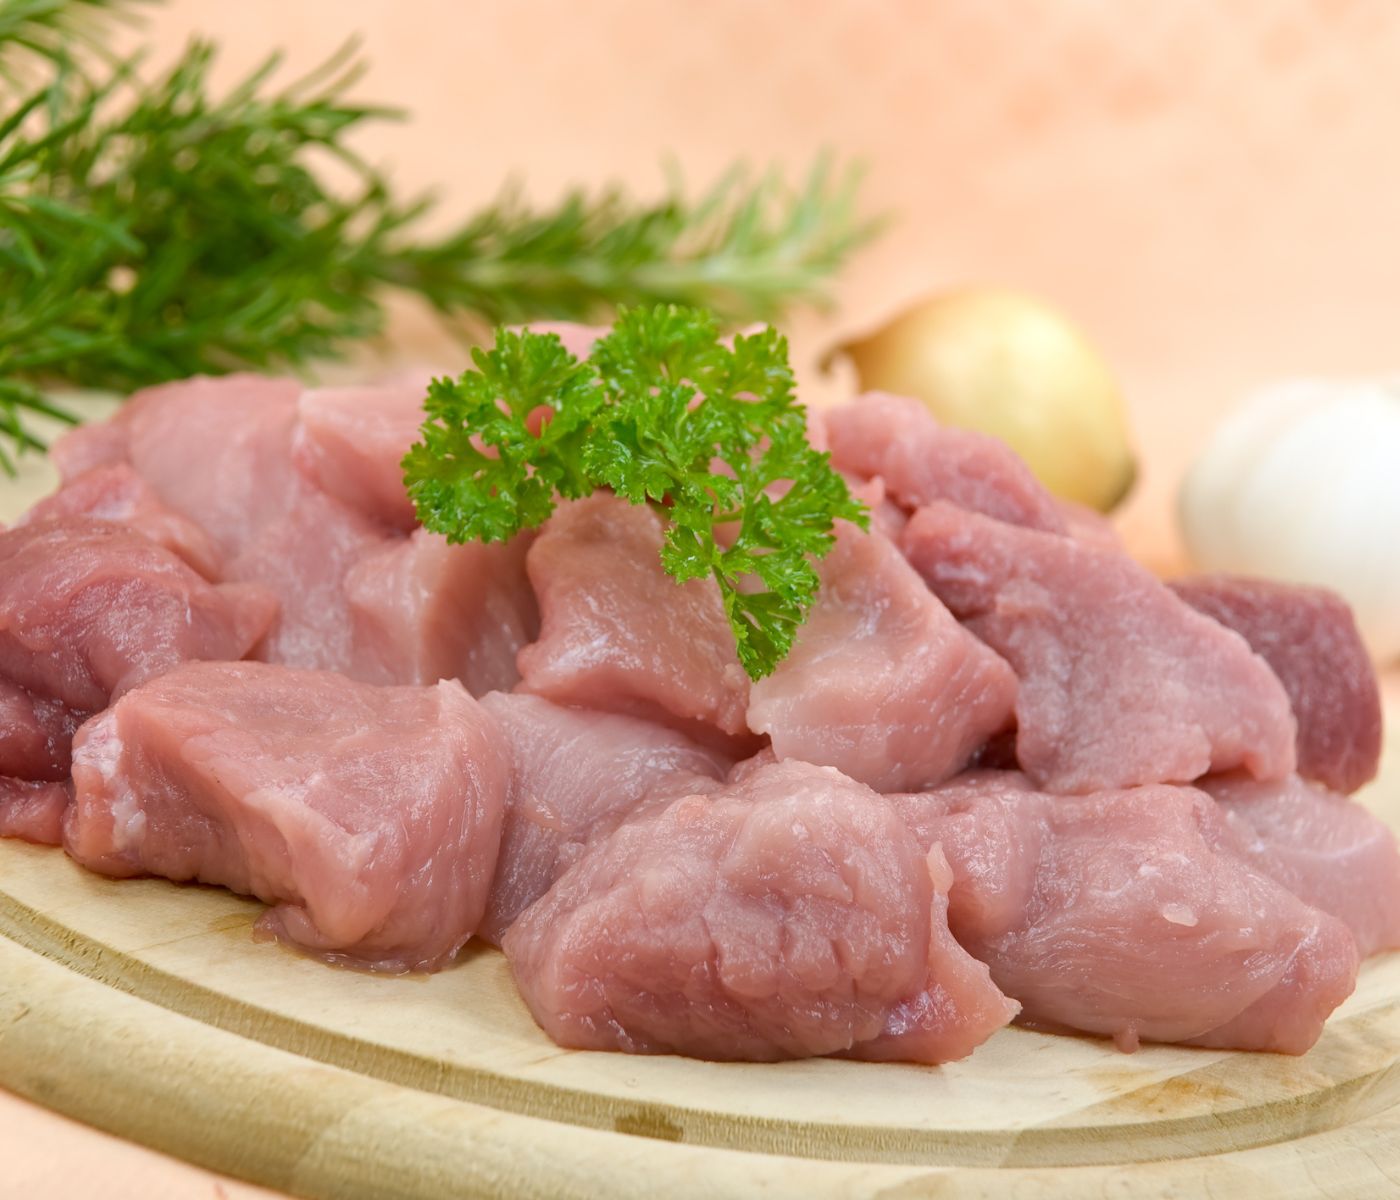 Fatores que podem influenciar a qualidade da carne suína